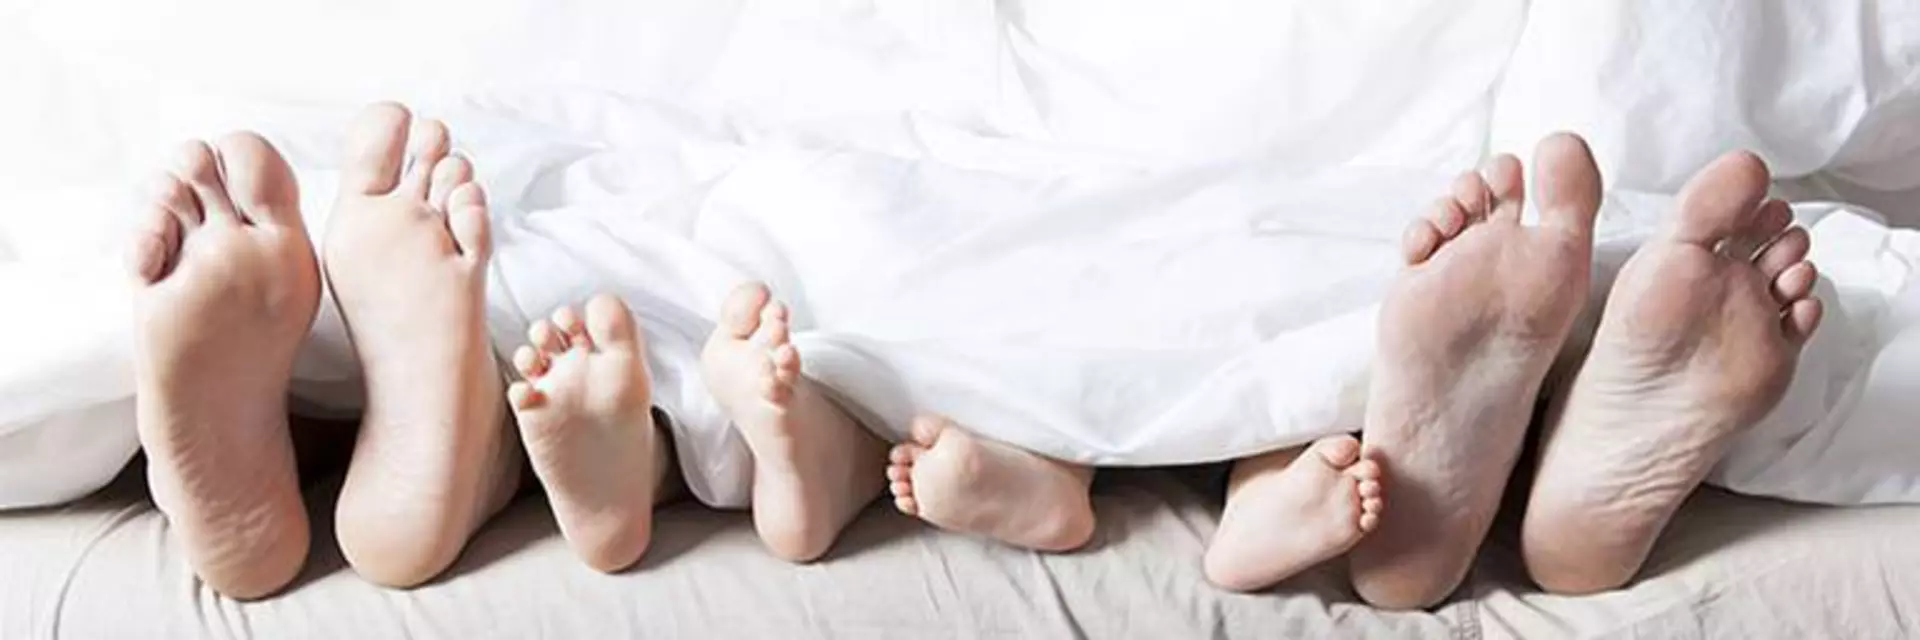 Vier Paar Füße schauen unter der weißen Bettdecke hervor. Es ist klar eine Familie, da es sich um Männerfüße, Frauenfüße und 2  Paar Kinderfüße handelt.